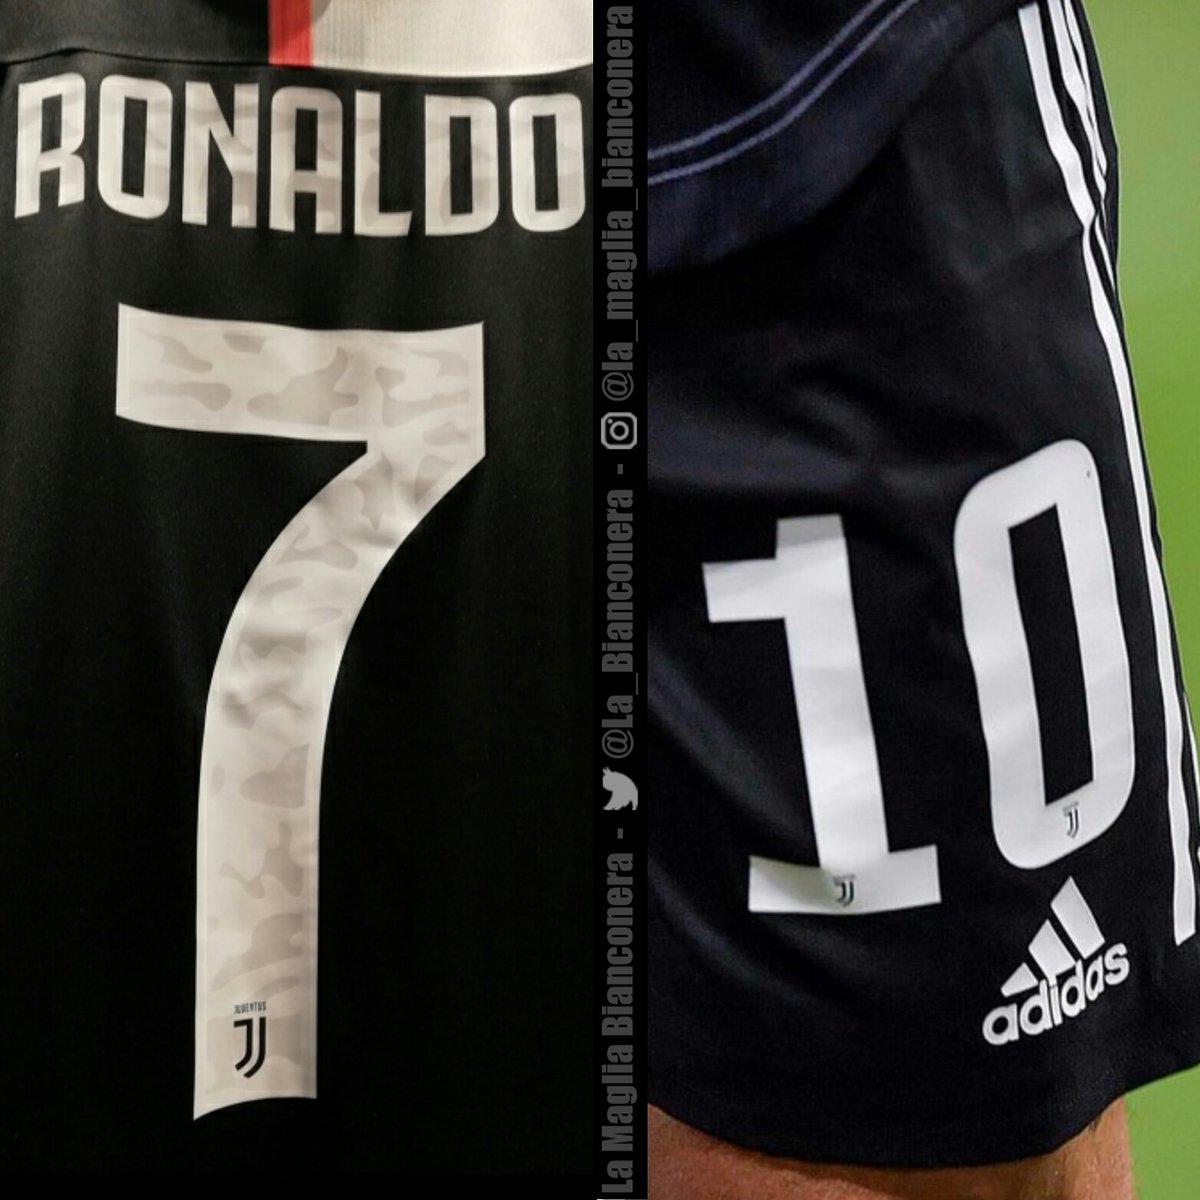 Camo Adidas Juventus 19 20 Kit Font Released Away Kit Leak